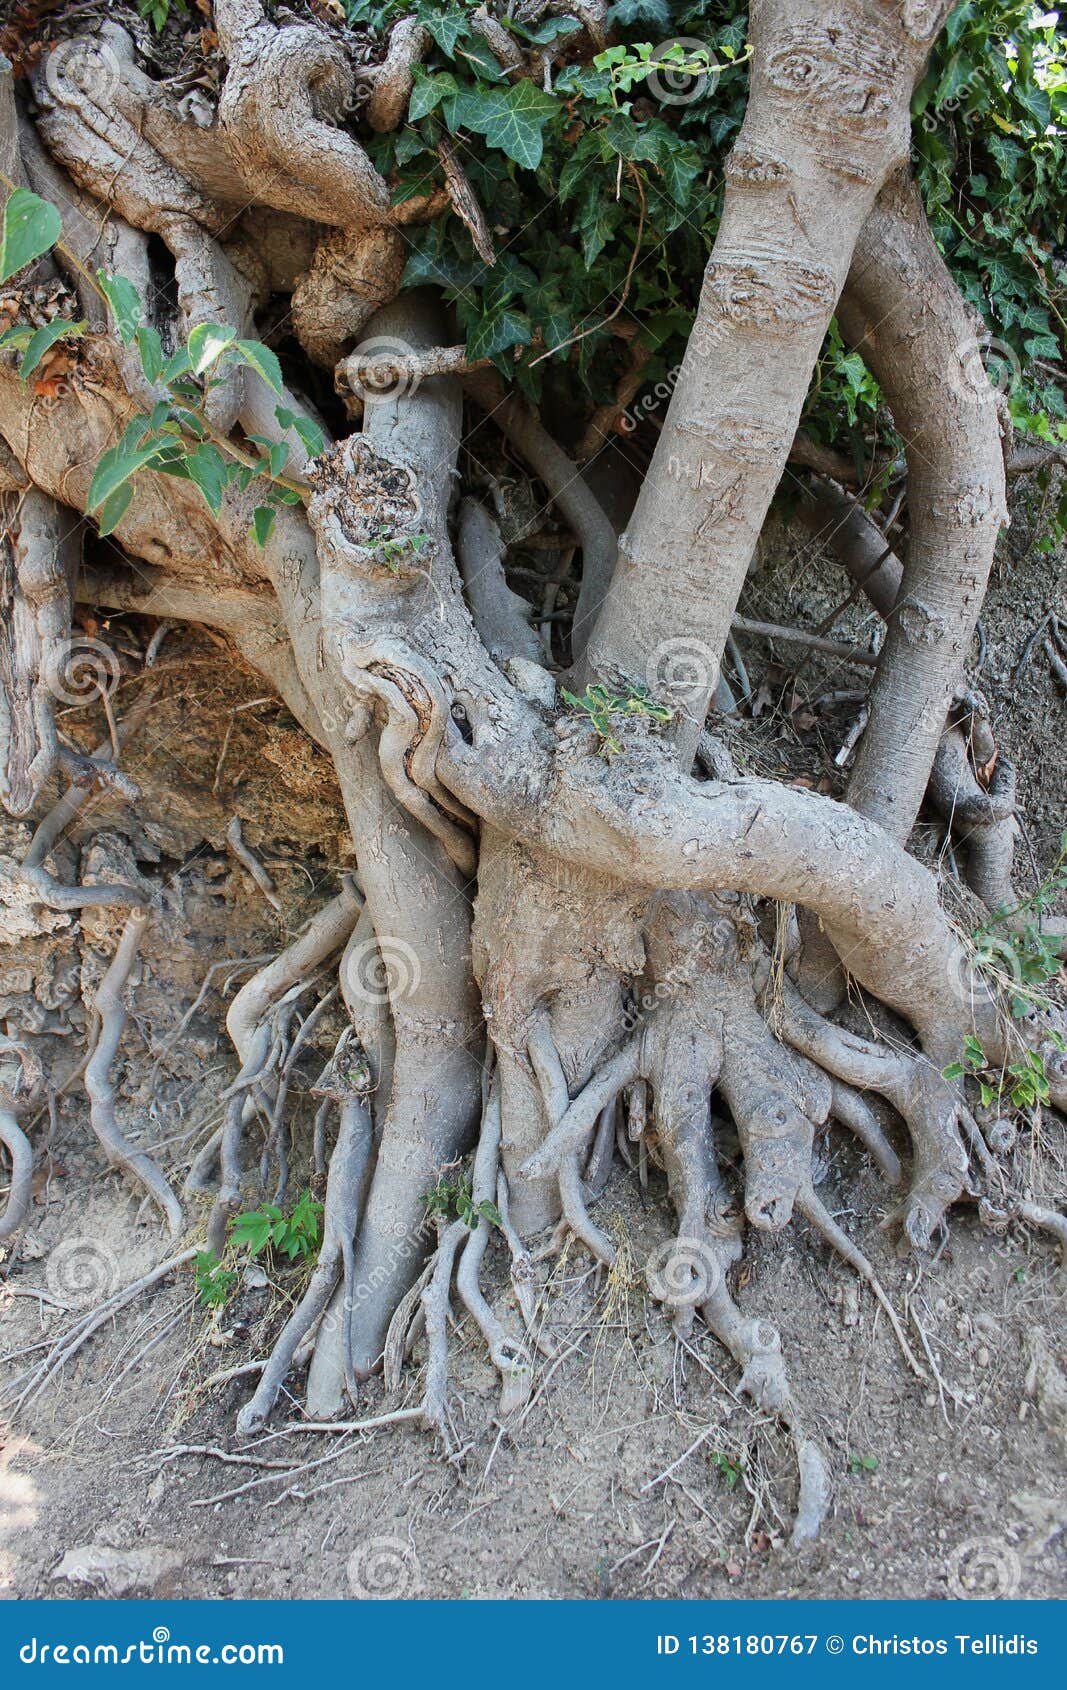 Больший корень это. Большие корни. Большой корень. Корень больше. Показать корень большого дерева.